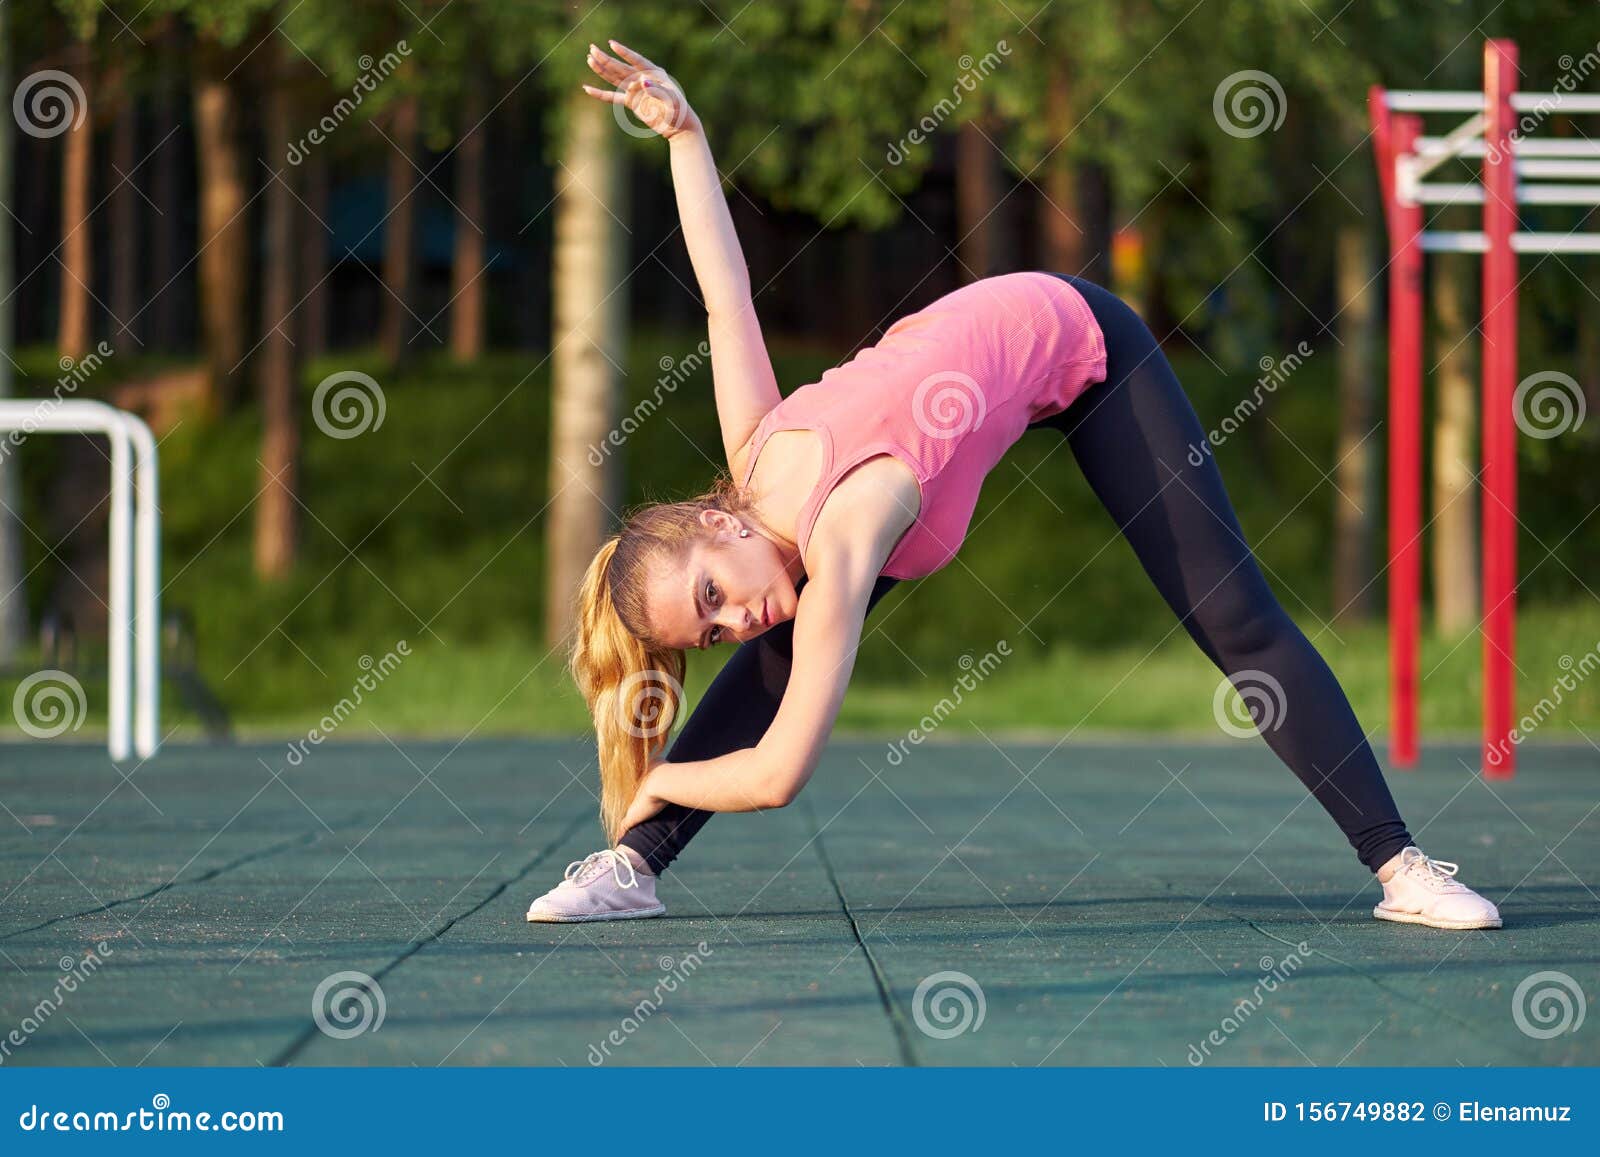 Χορεύτρια ή γυμνάστρια που εκπαιδεύεται σε αθλητικά γήπεδα γυμναστικής Στοκ  Εικόνες - εικόνα από lifestyle: 156749882